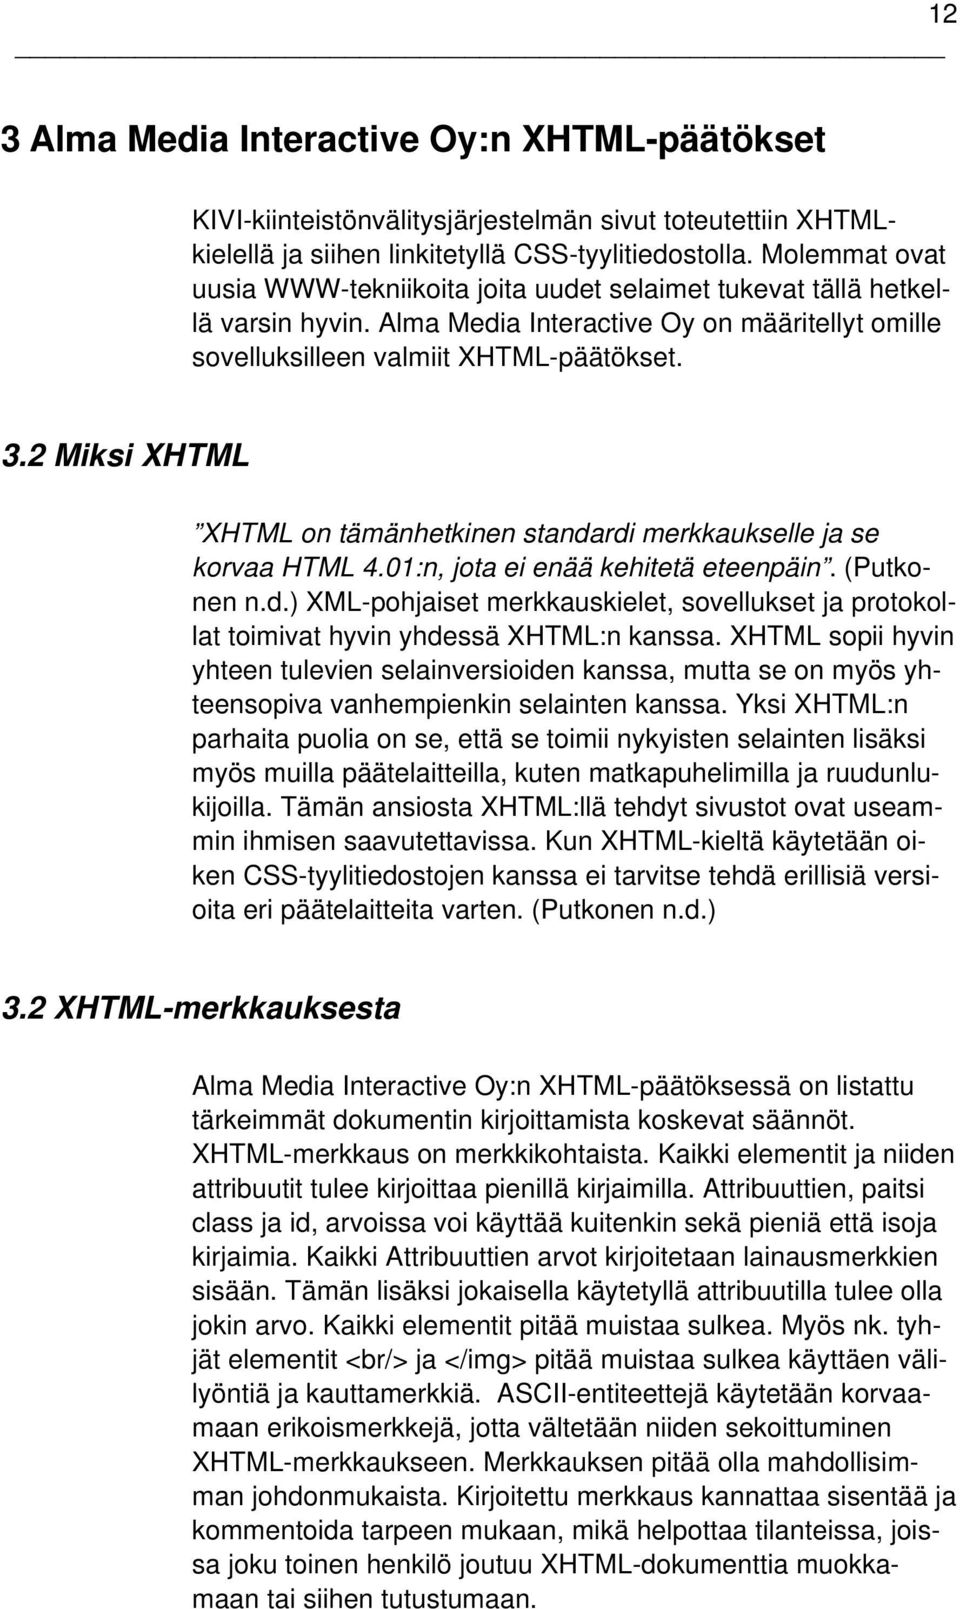 2 Miksi XHTML XHTML on tämänhetkinen standardi merkkaukselle ja se korvaa HTML 4.01:n, jota ei enää kehitetä eteenpäin. (Putkonen n.d.) XML-pohjaiset merkkauskielet, sovellukset ja protokollat toimivat hyvin yhdessä XHTML:n kanssa.